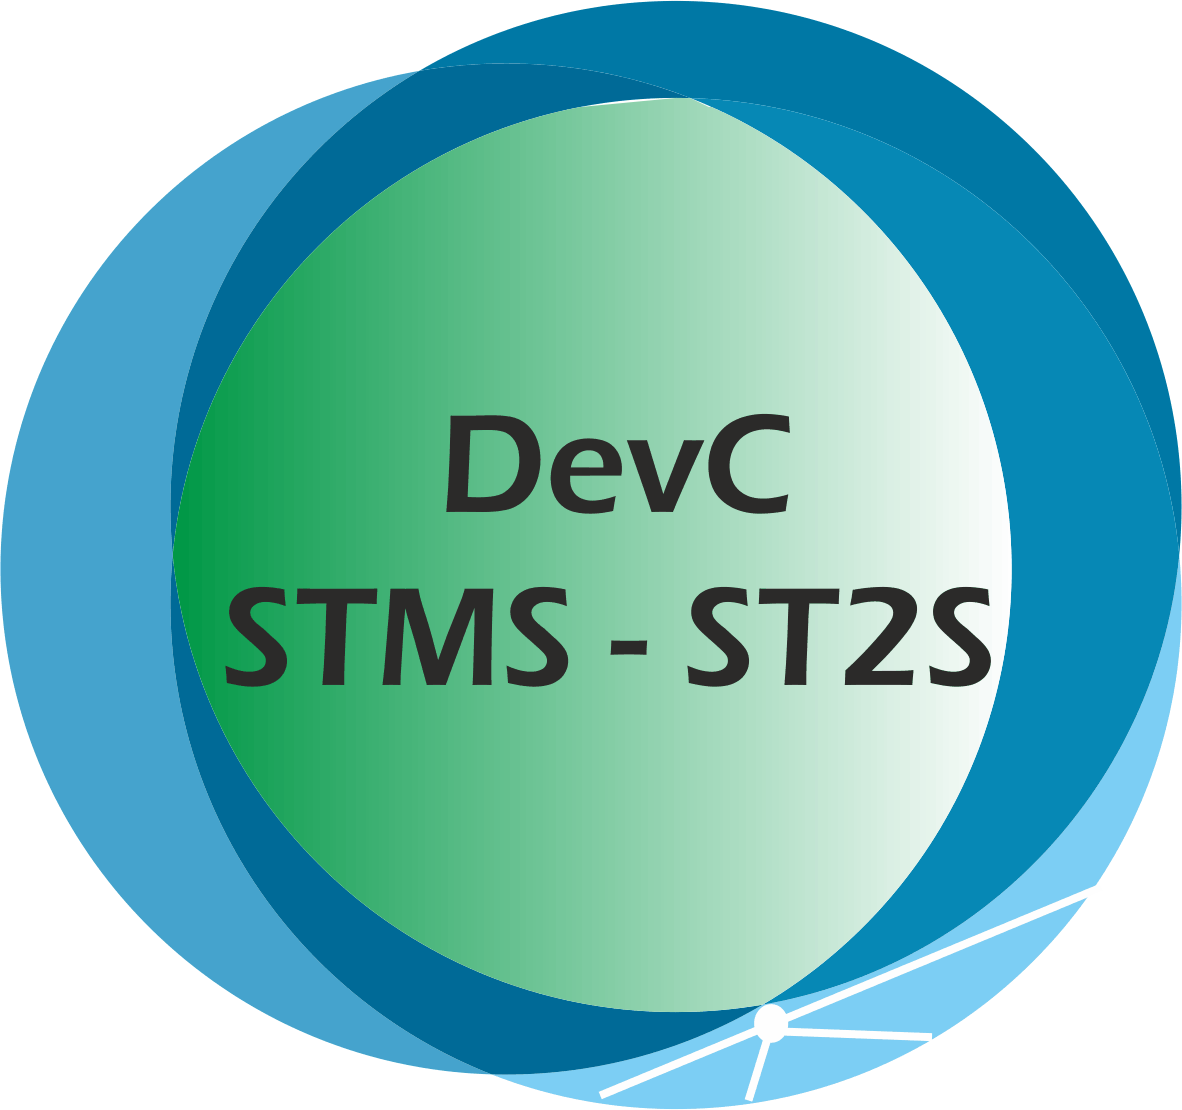 DevC STMS ST2S